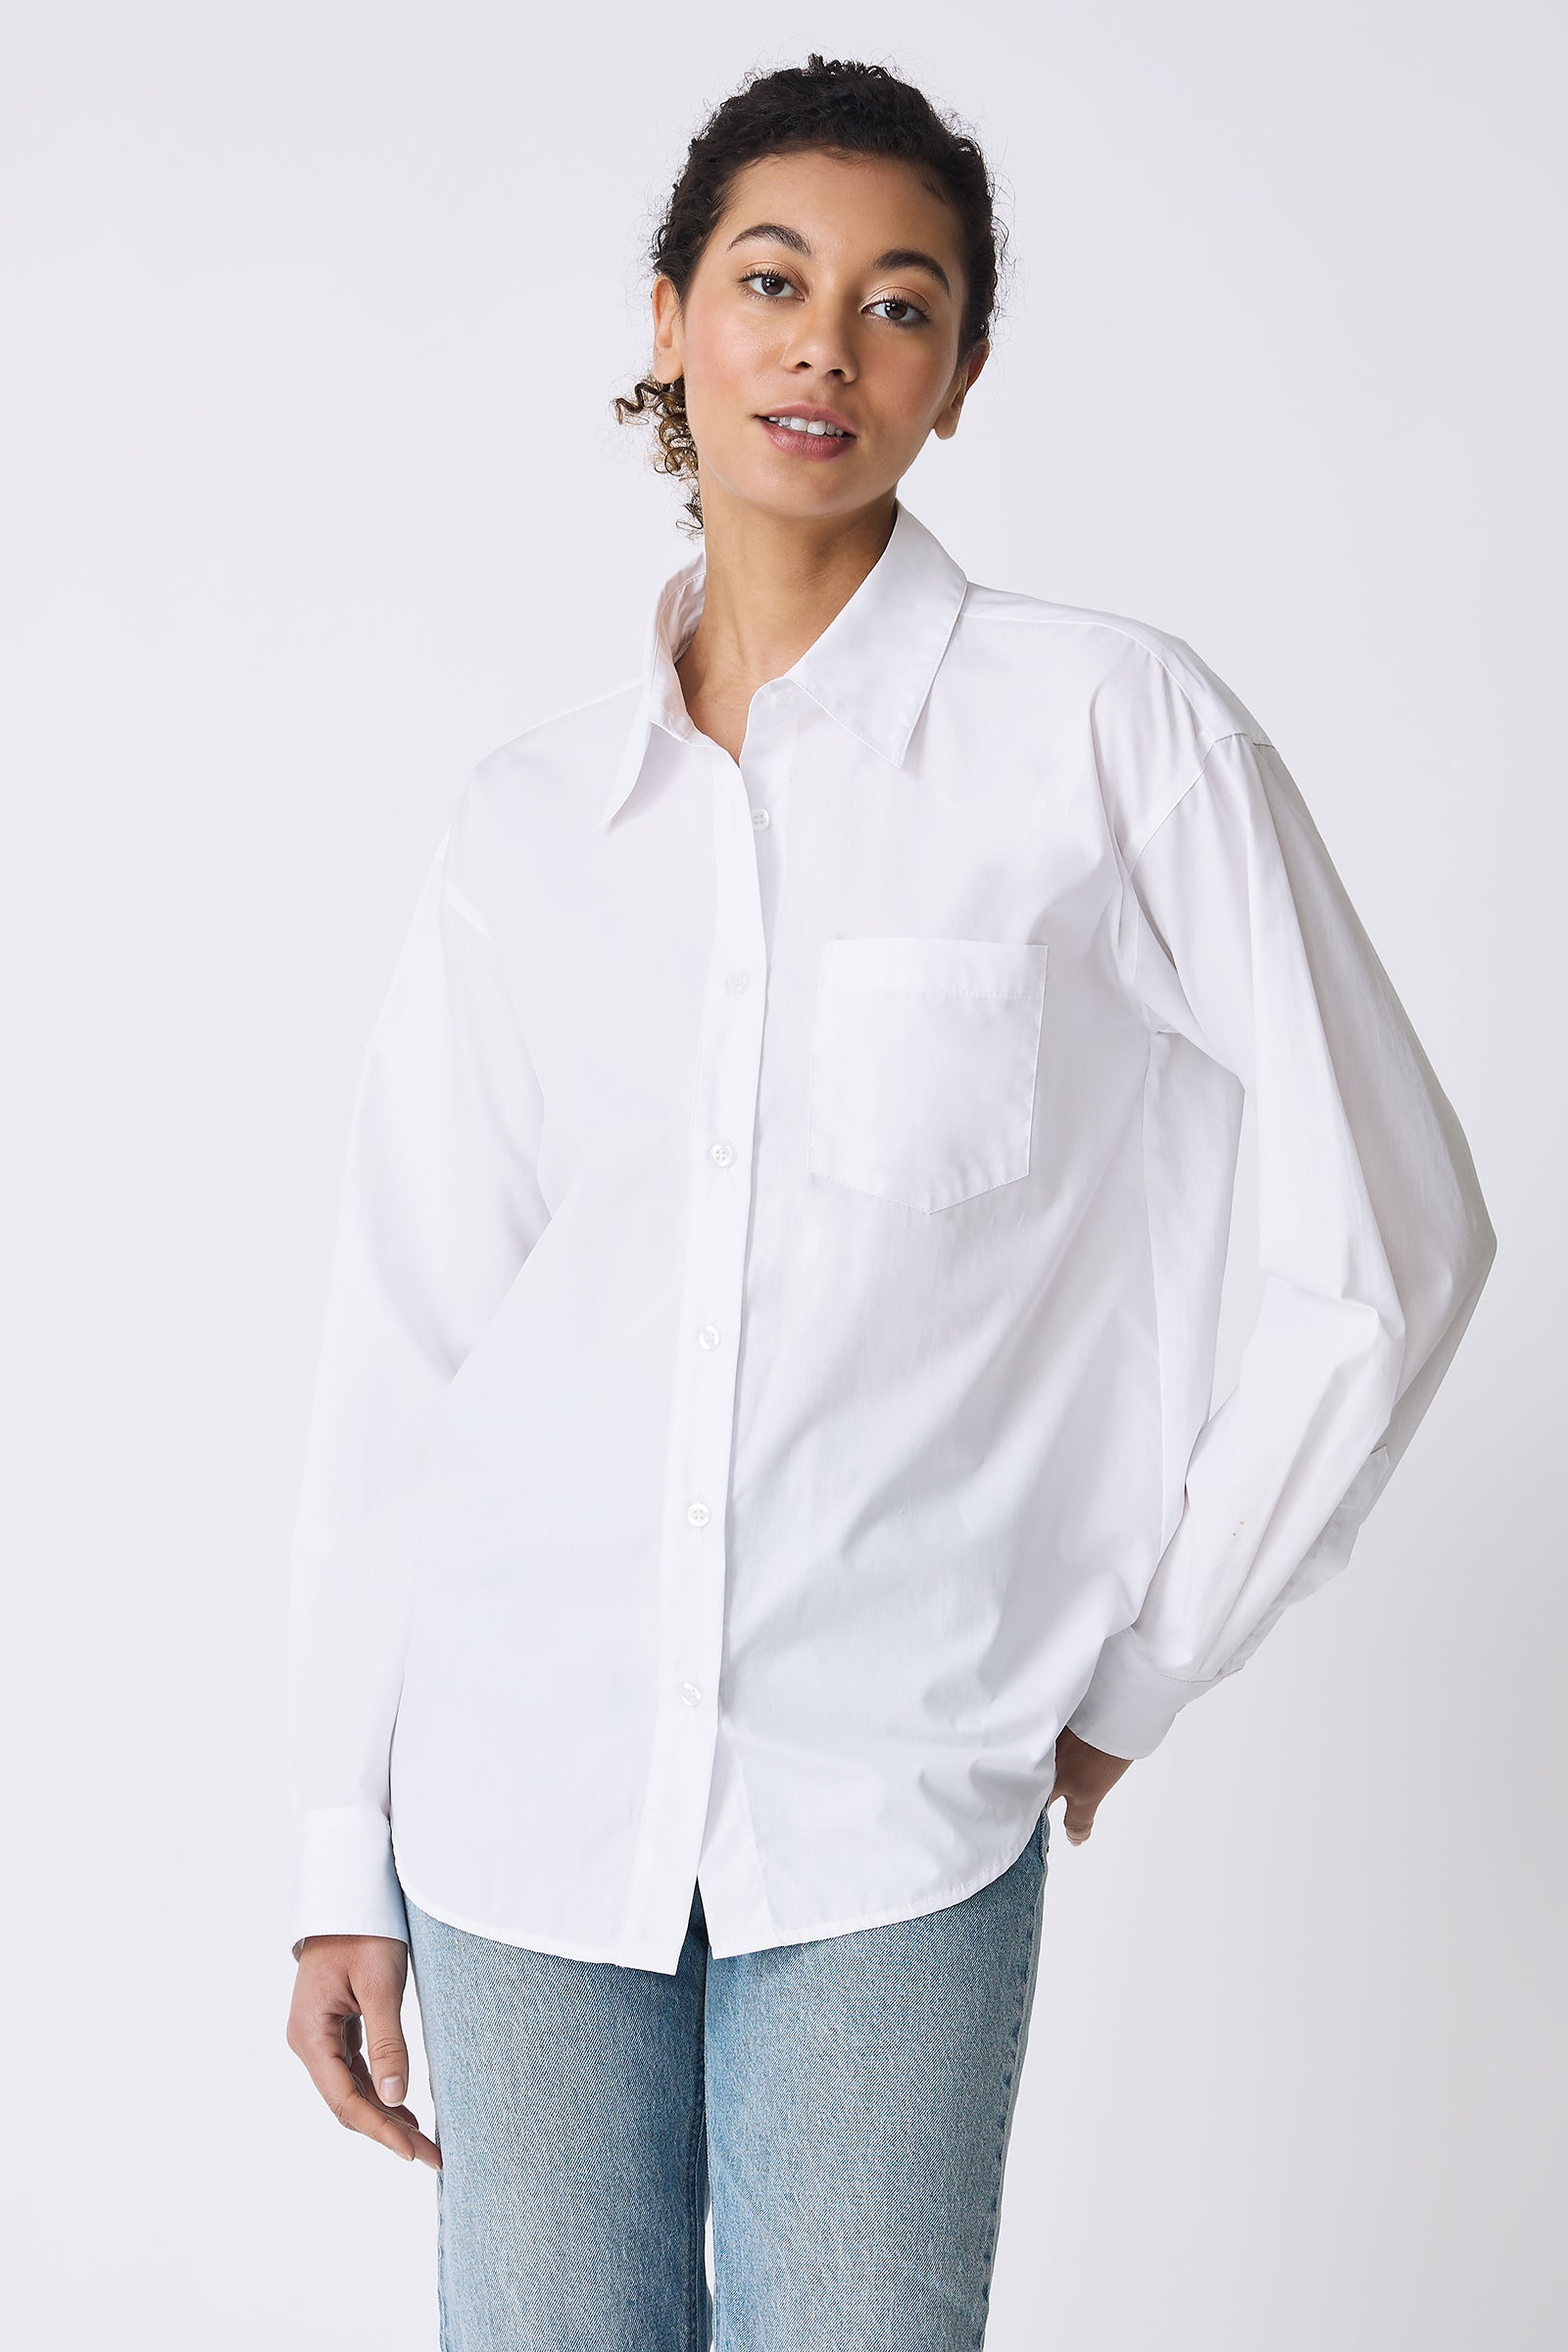 Kal Rieman Joni Boyfriend Shirt in White Poplin on model with hand in back pocket